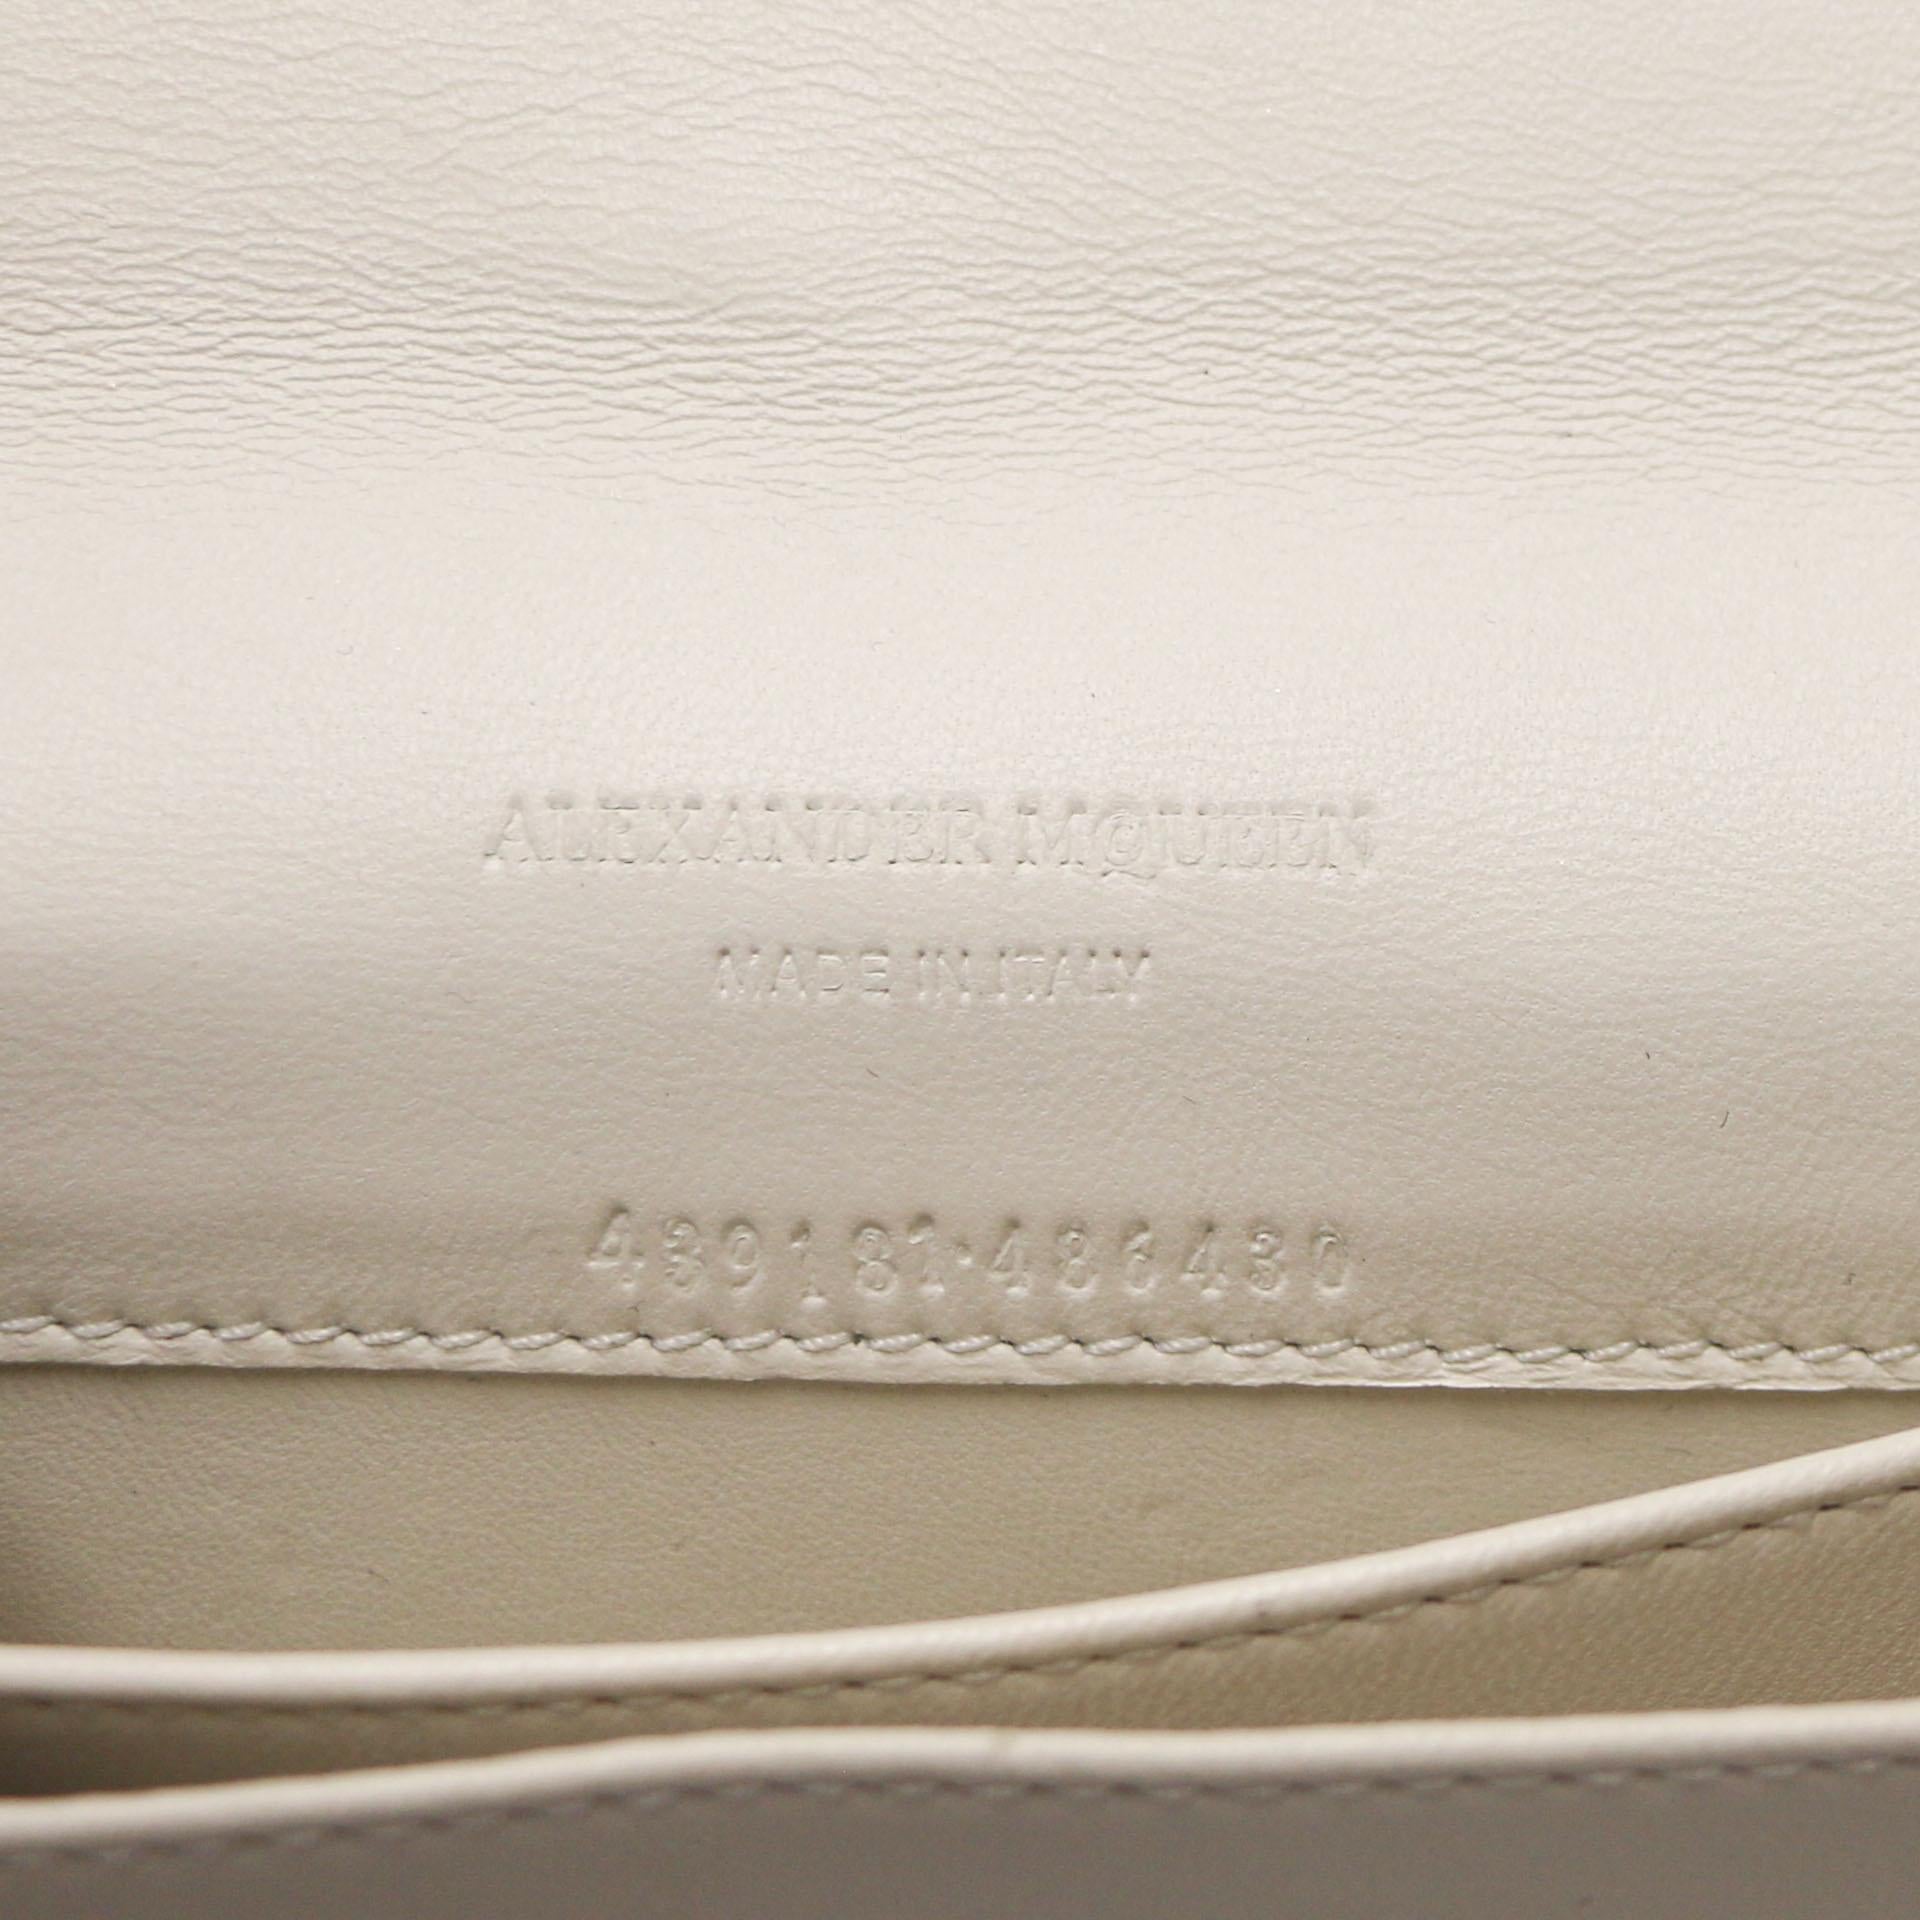 Women's Alexander McQueen Jewel Bag For Sale